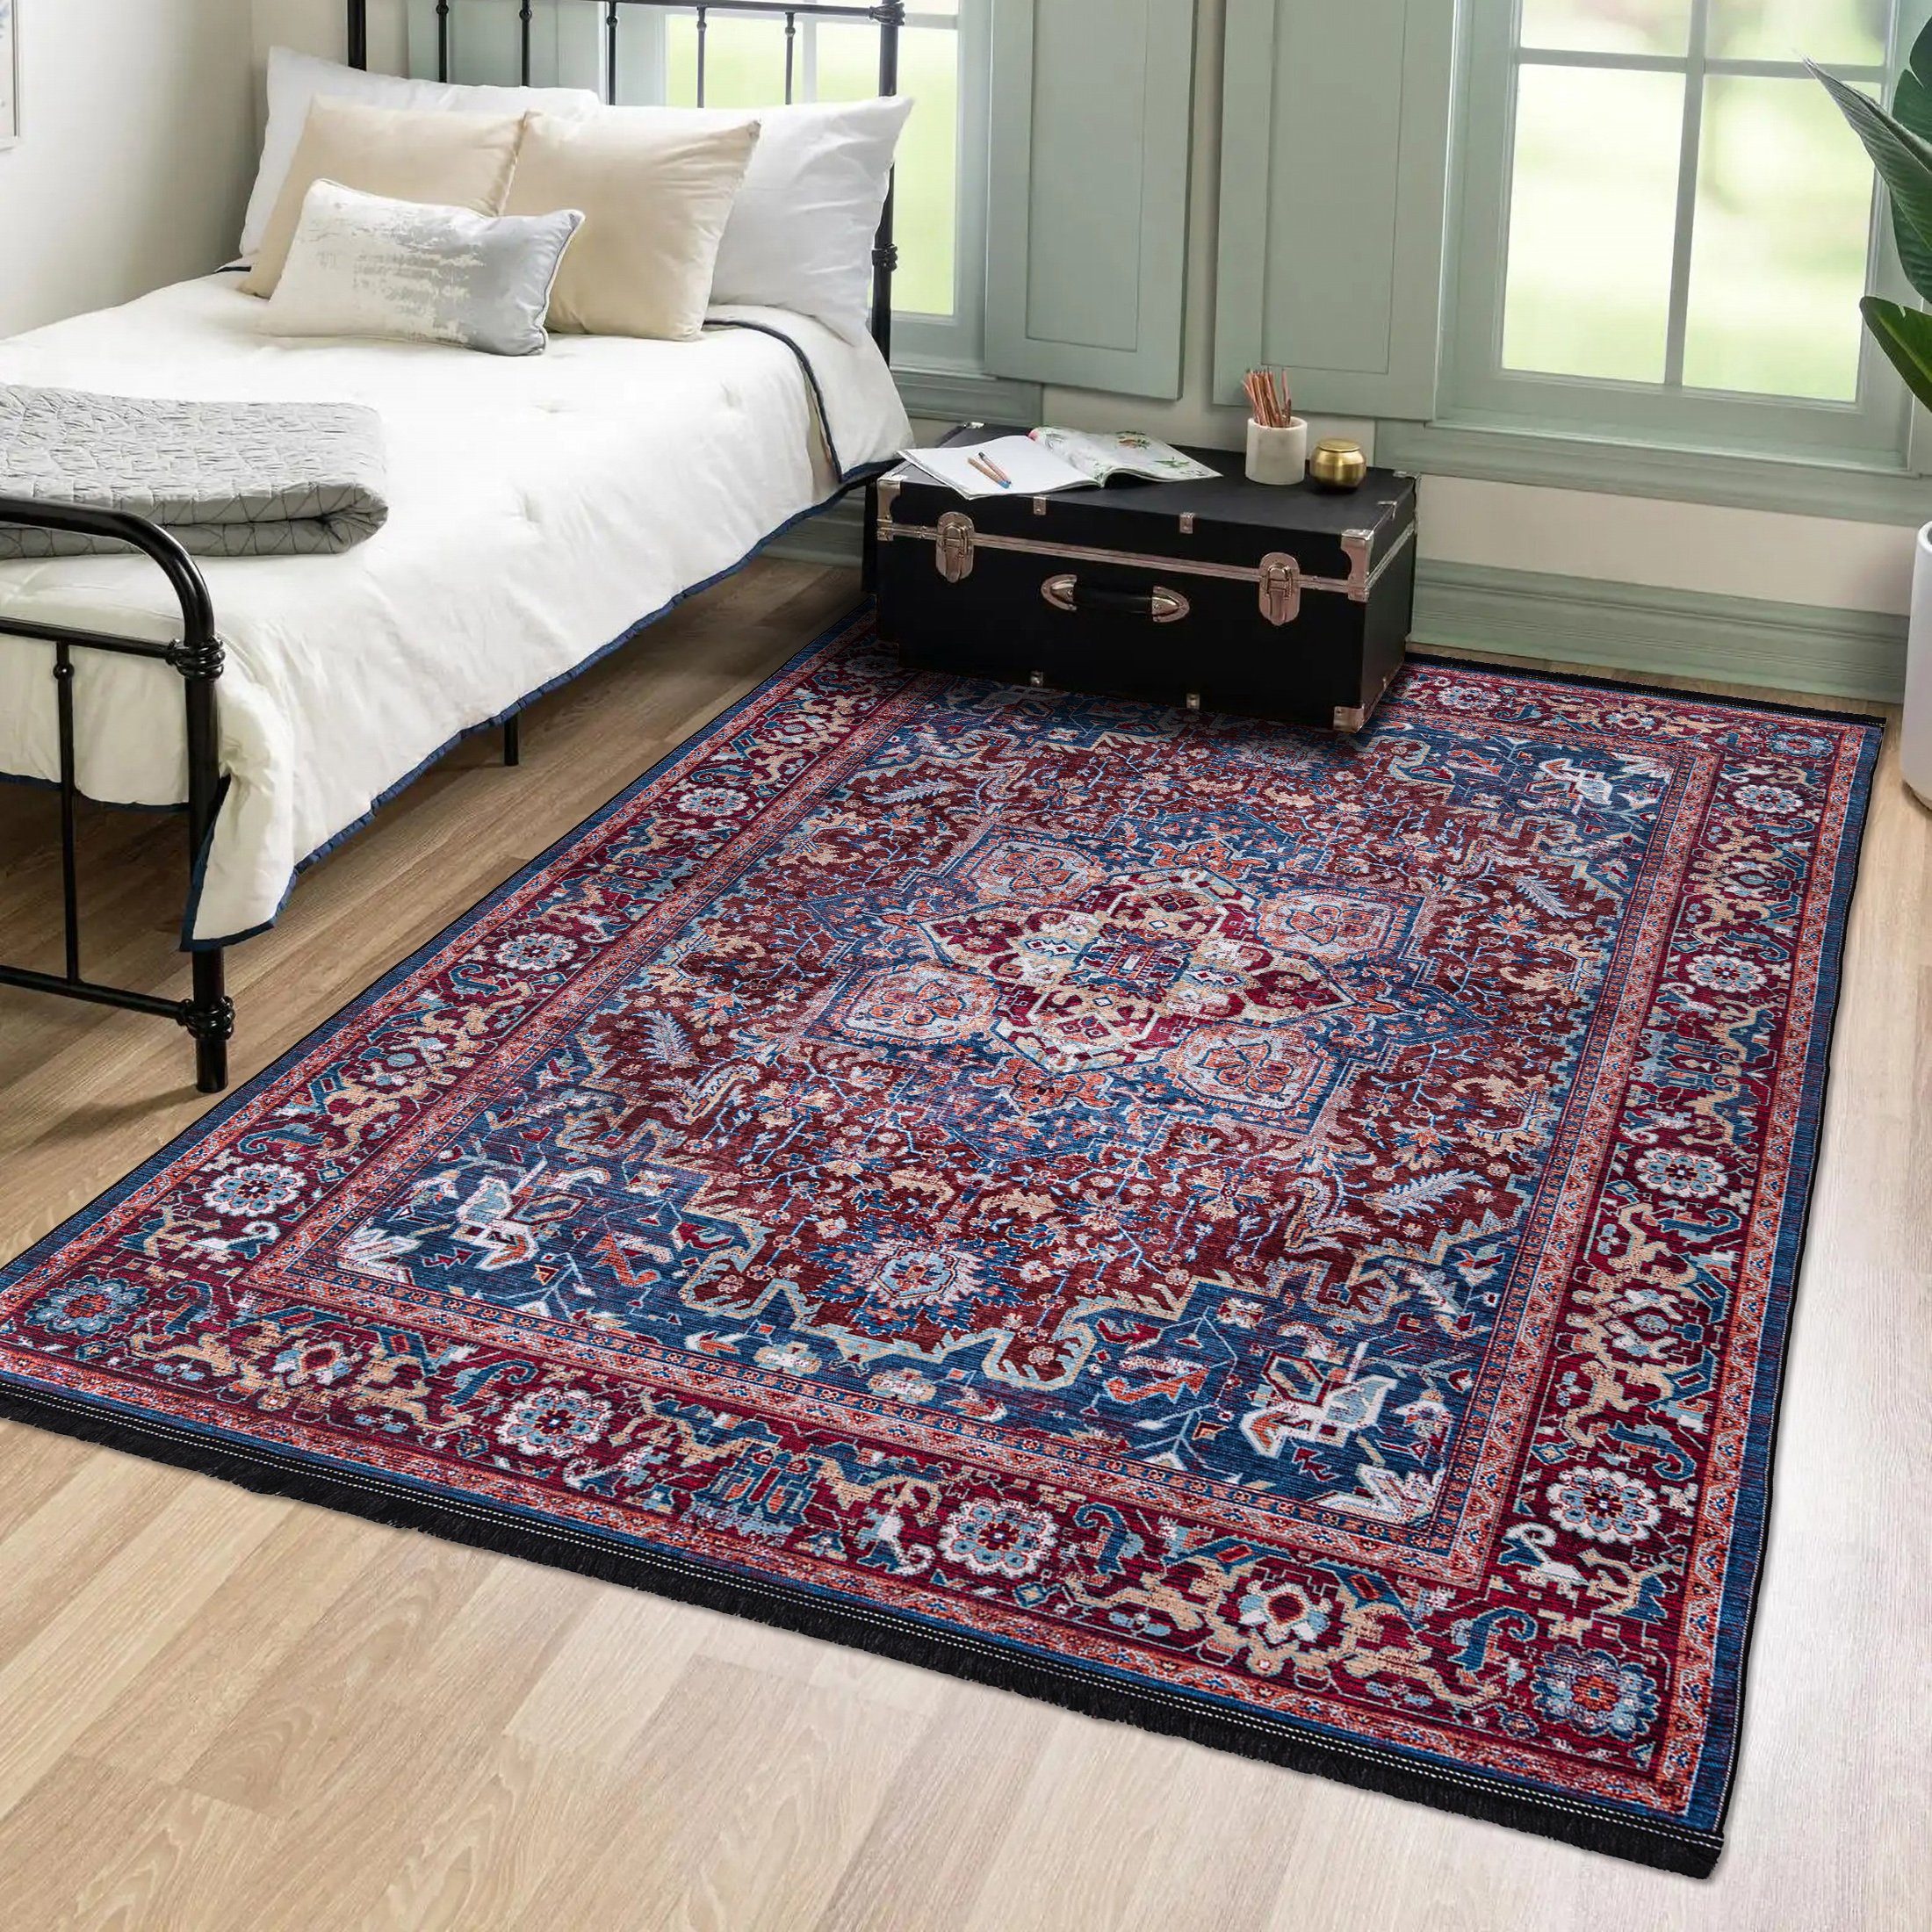 Orientteppich Orientalisch Vintage Teppich Traditioneller Orient Teppich, Mazovia, 120 x 170 cm, Kurflor, Waschbar in Waschmaschine, Höhe 5 mm, Rutschfest Rot Blau / 38950